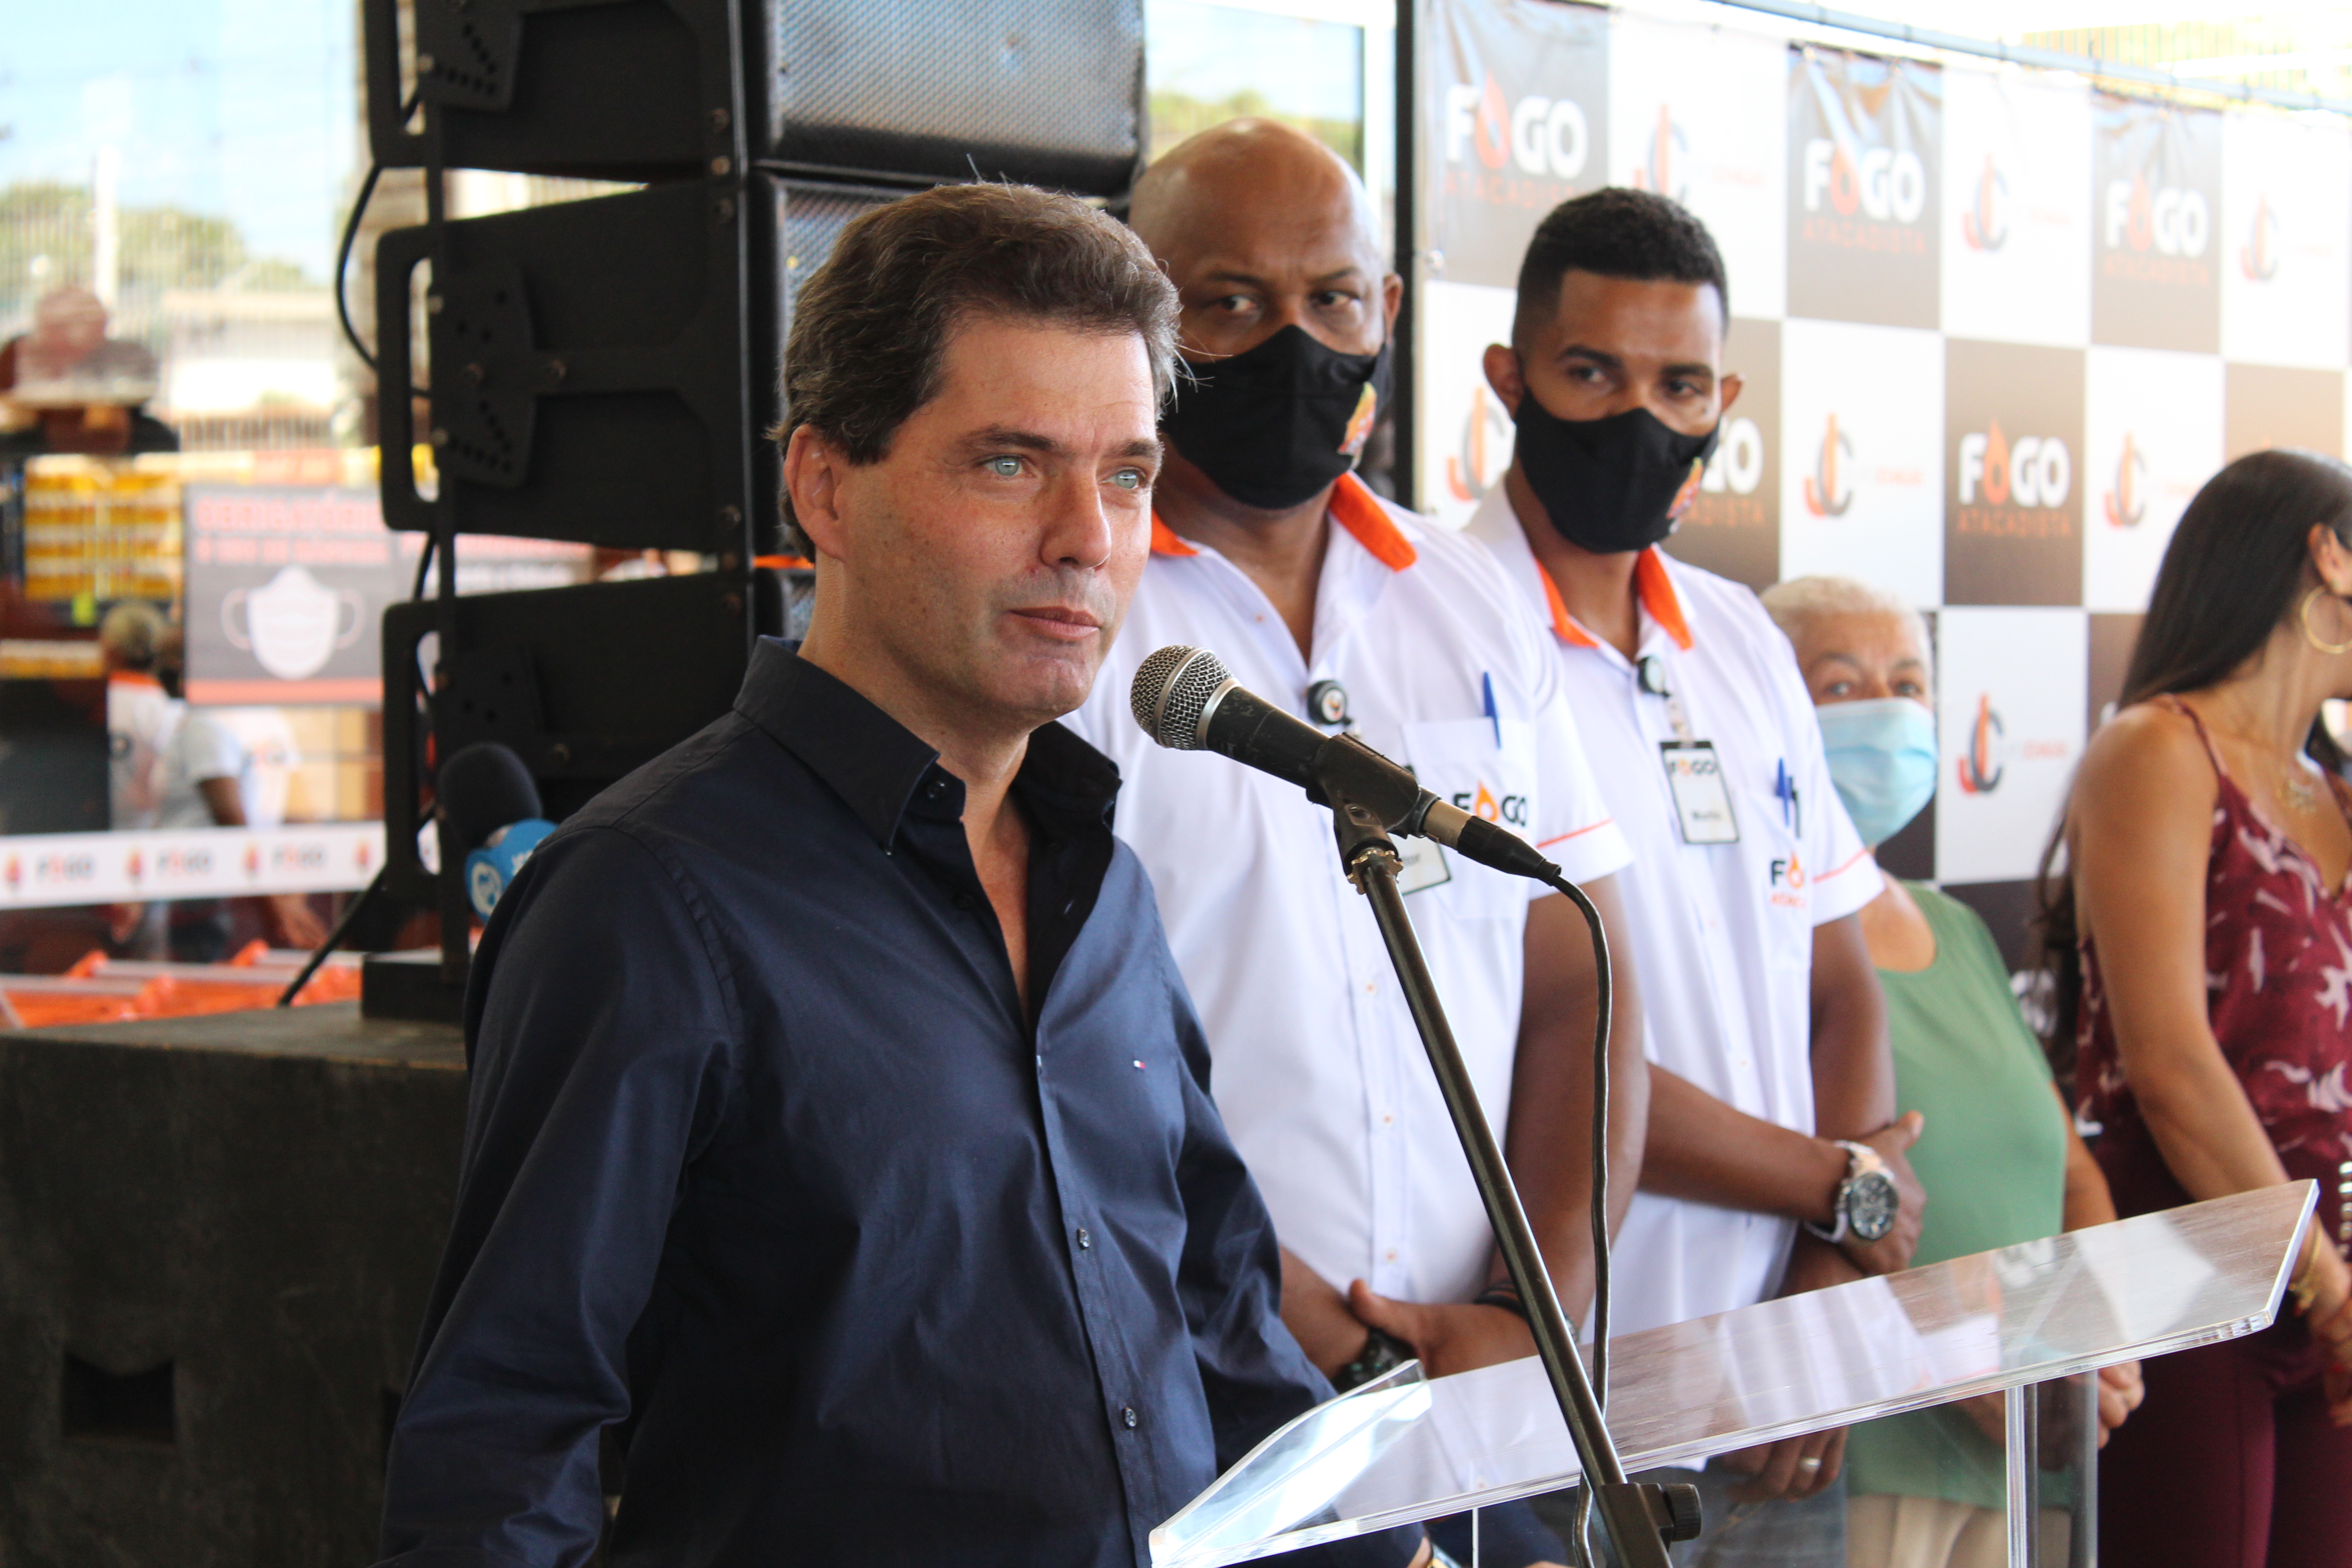 Prefeito eleito de Maracaju, Marcos Calderan durante discurso no Fogo Atacadista - Tudodoms 